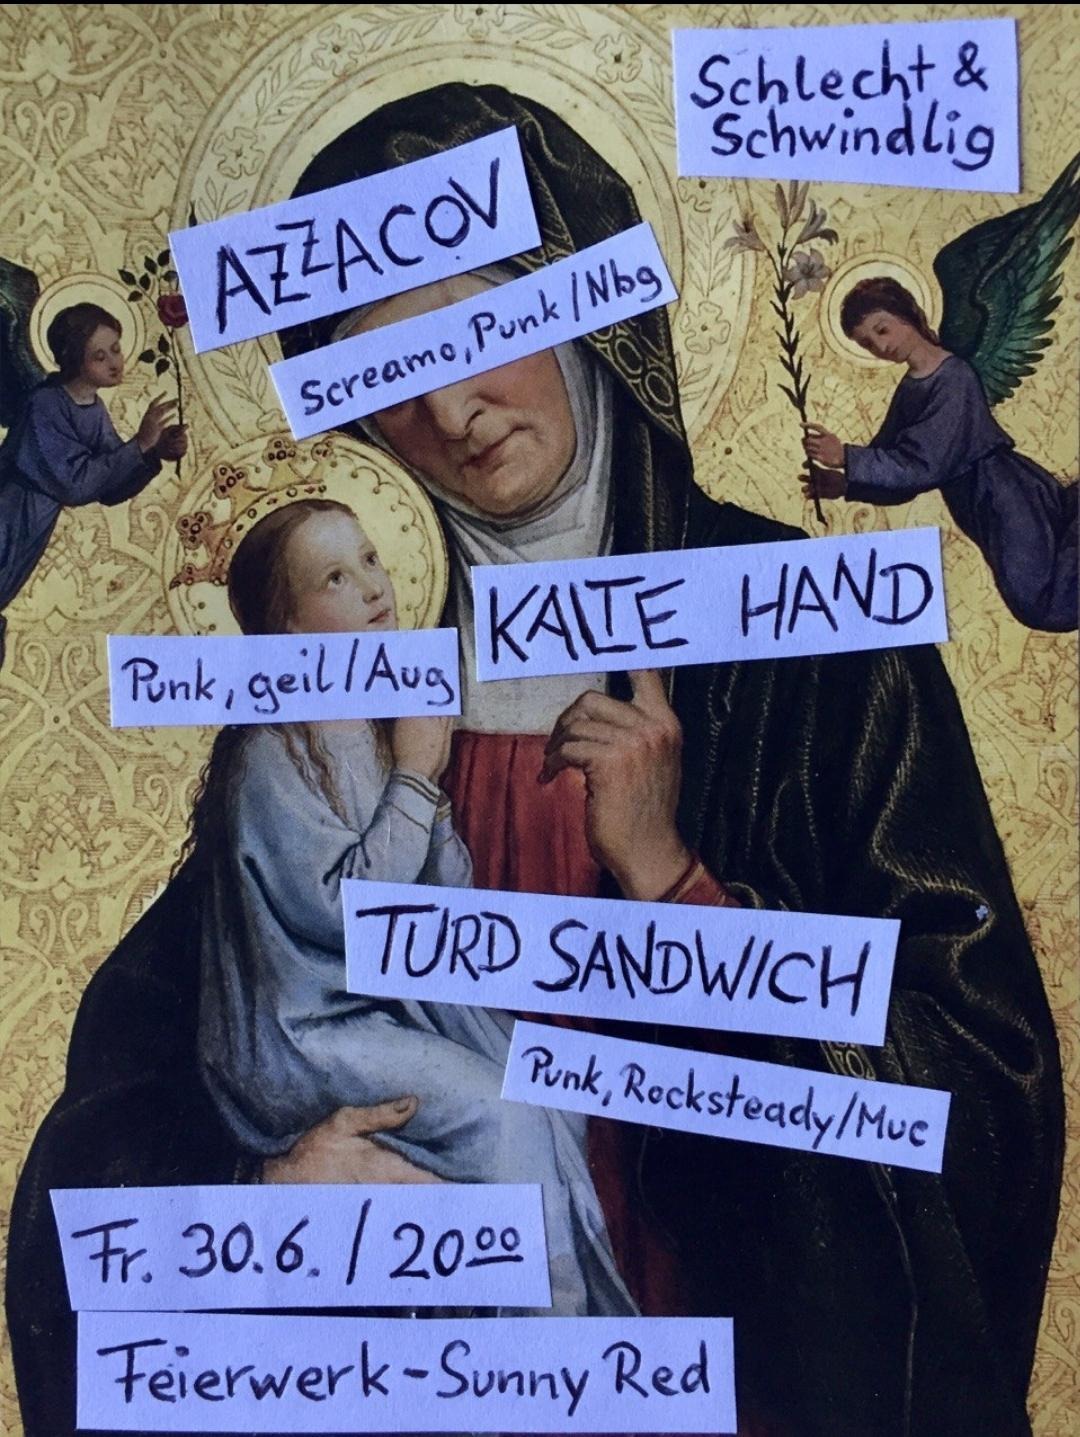 Konzert: Azzacov + Kalte Hand + Turd Sandwich